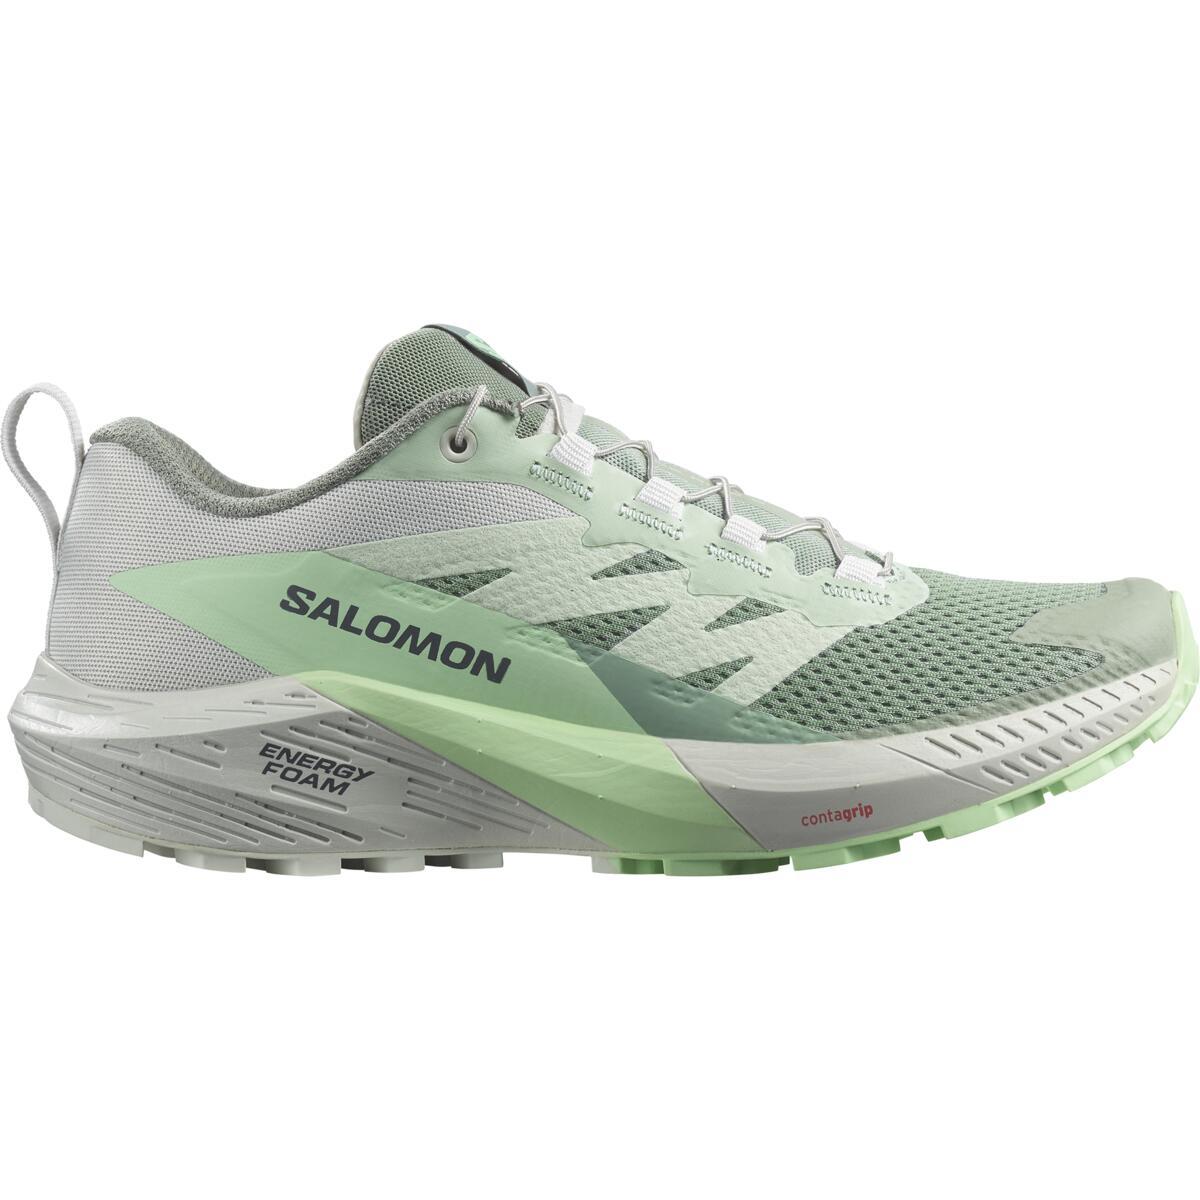 Salomon Womens Sense Ride 5 Trail Shoes - Lily Pad/metal/green Ash